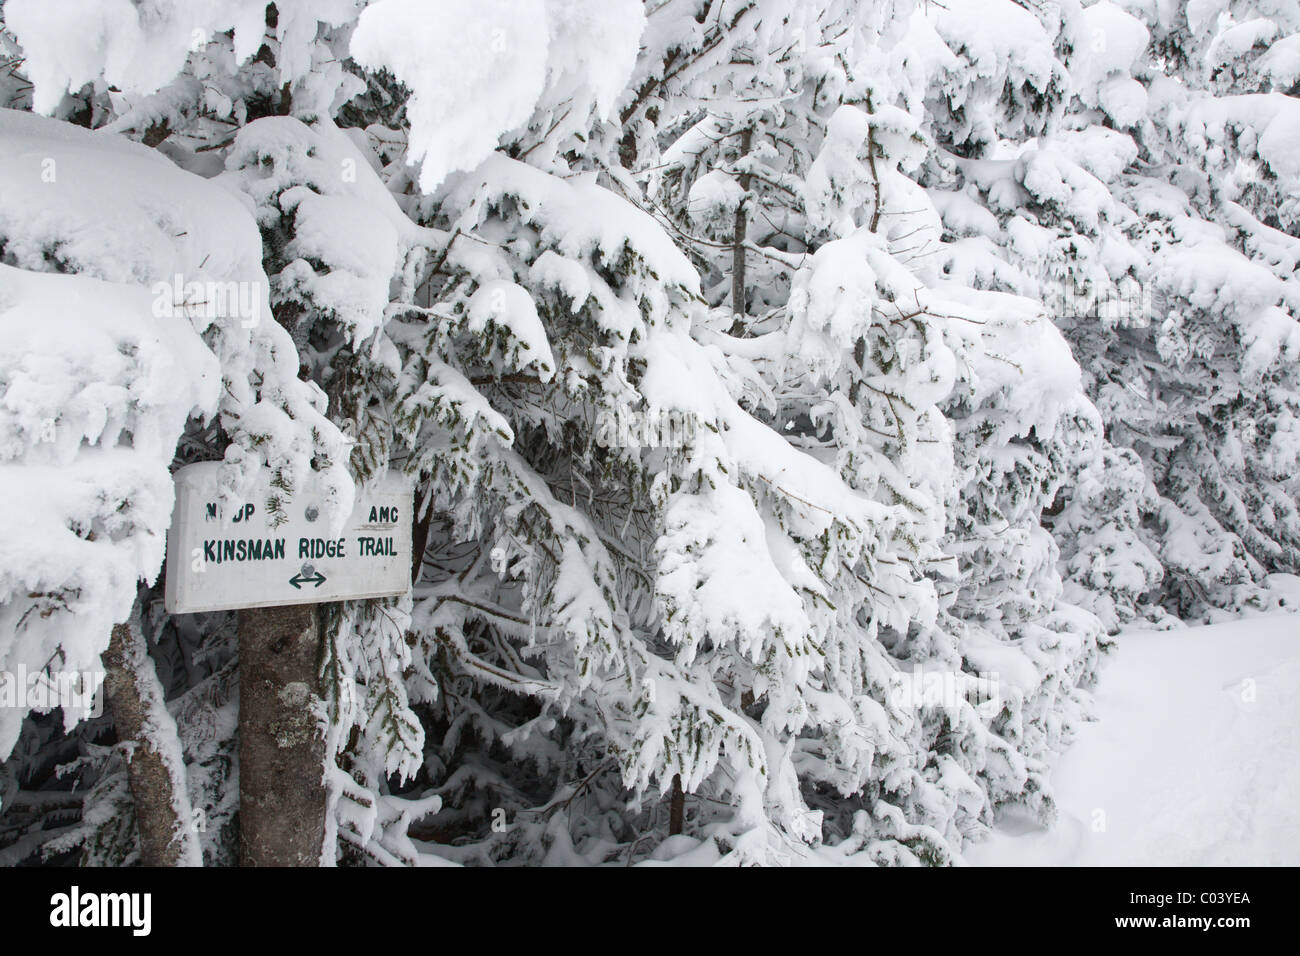 Kinsman ridge trail sur cannon mountain pendant les mois d'hiver dans les montagnes Blanches du New Hampshire, usa Banque D'Images